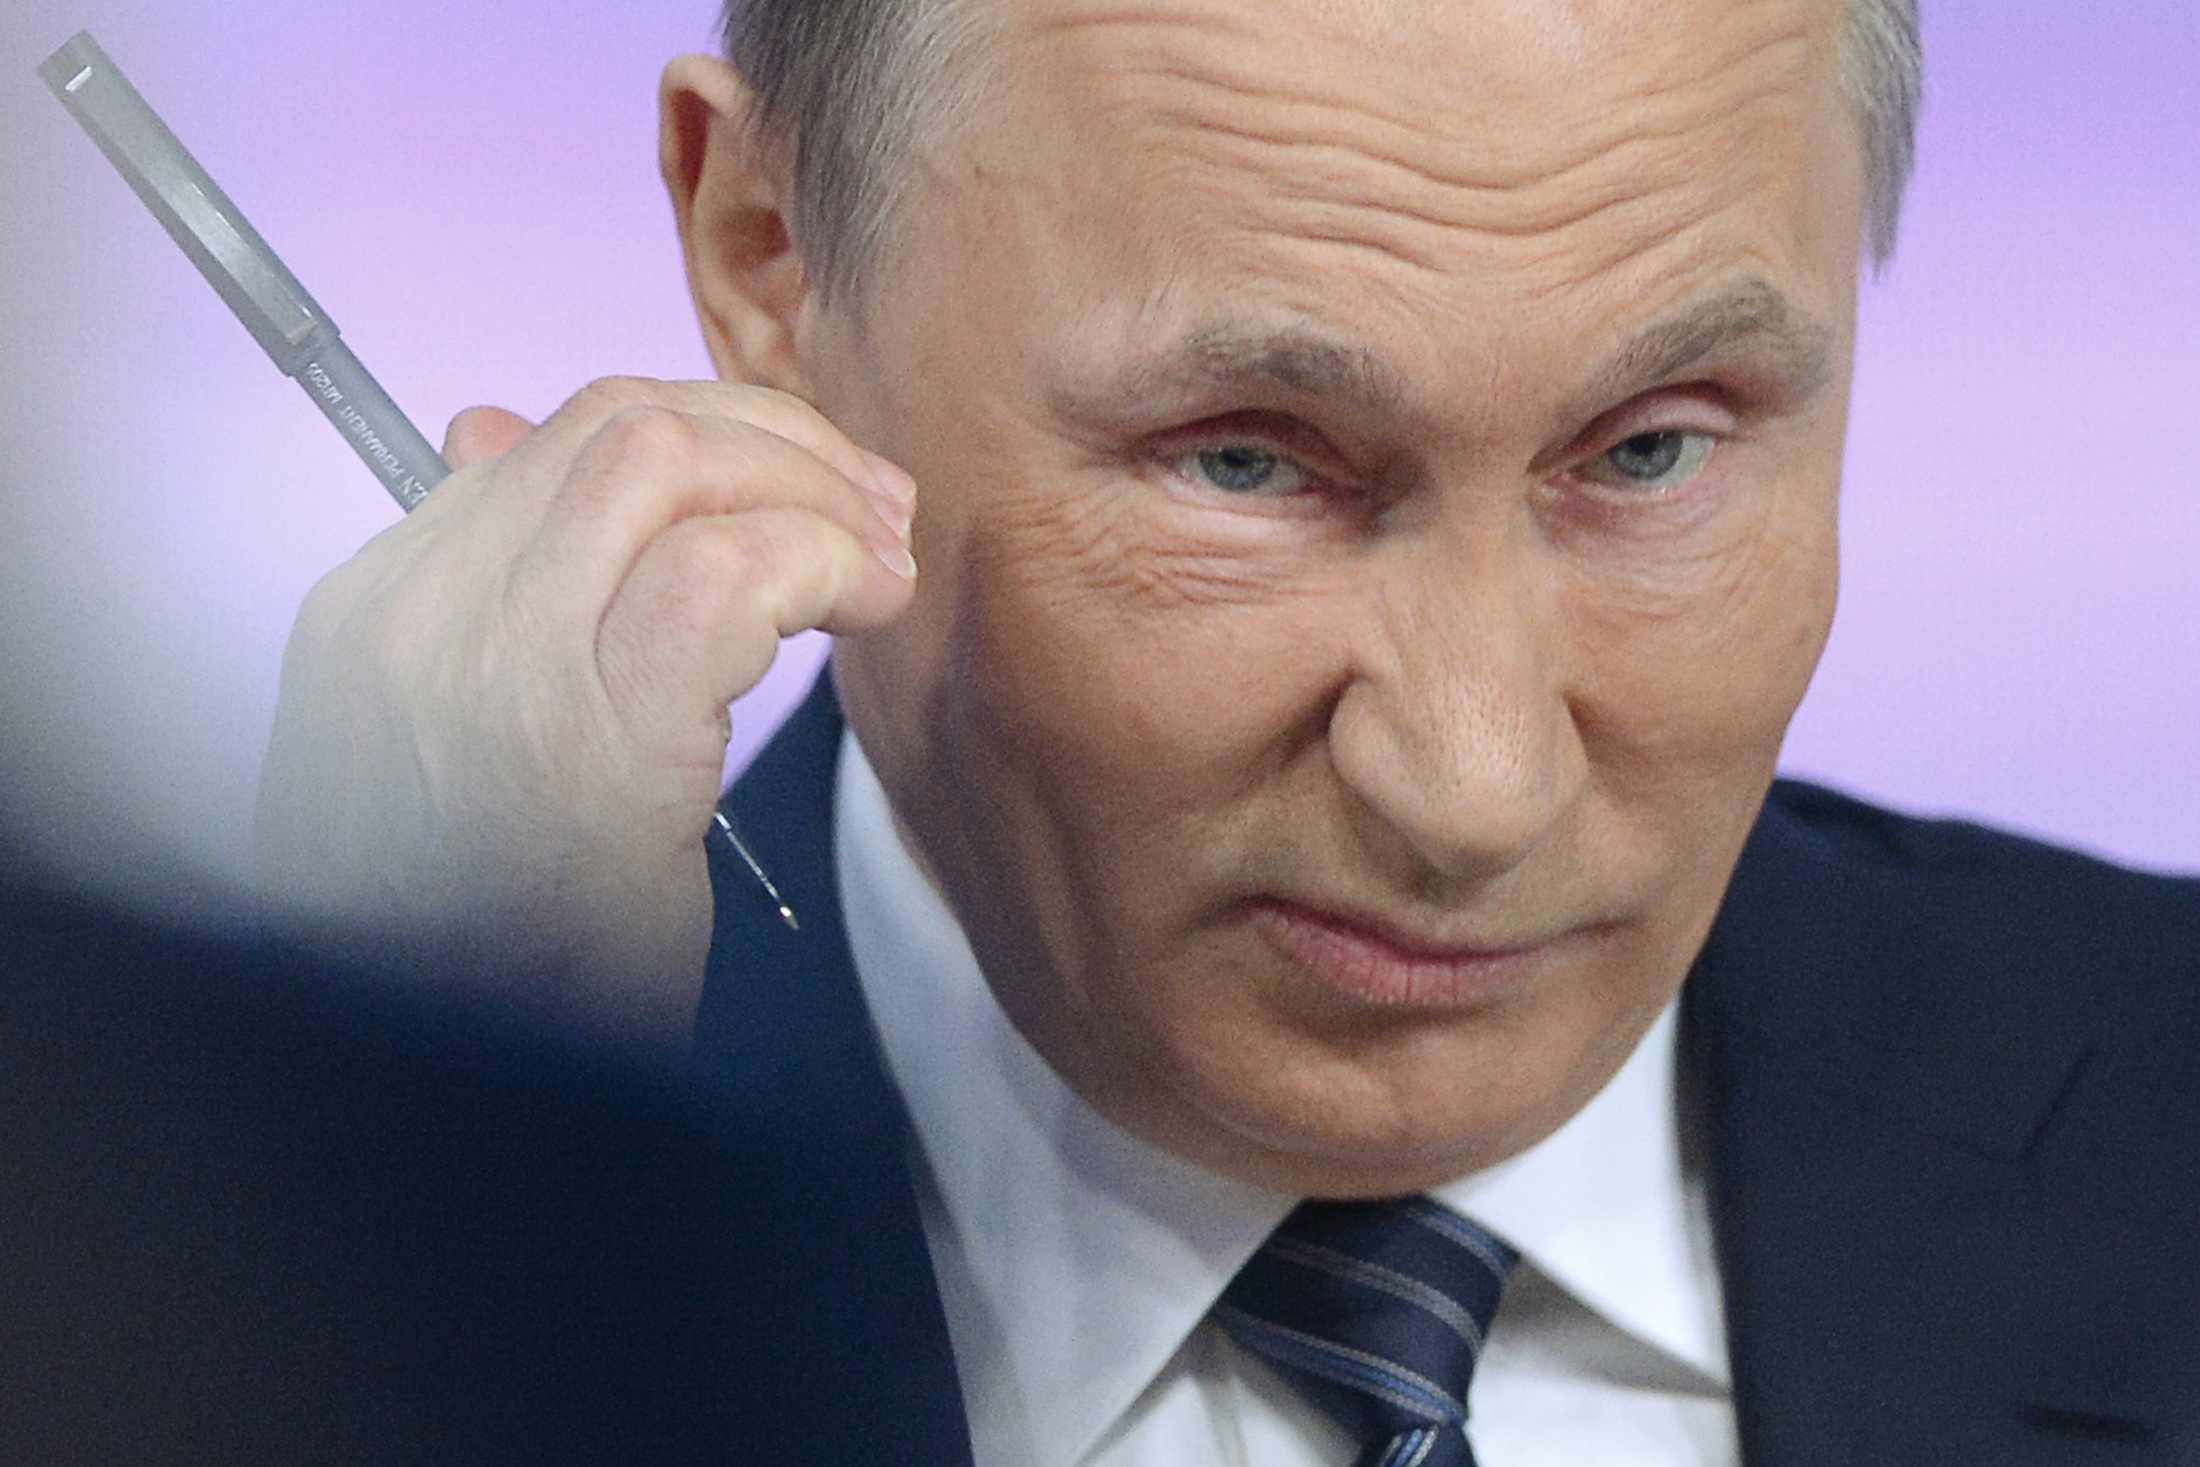 A brit állam szerint Vlagyimir Putyin személyesen öletett meg egy embert